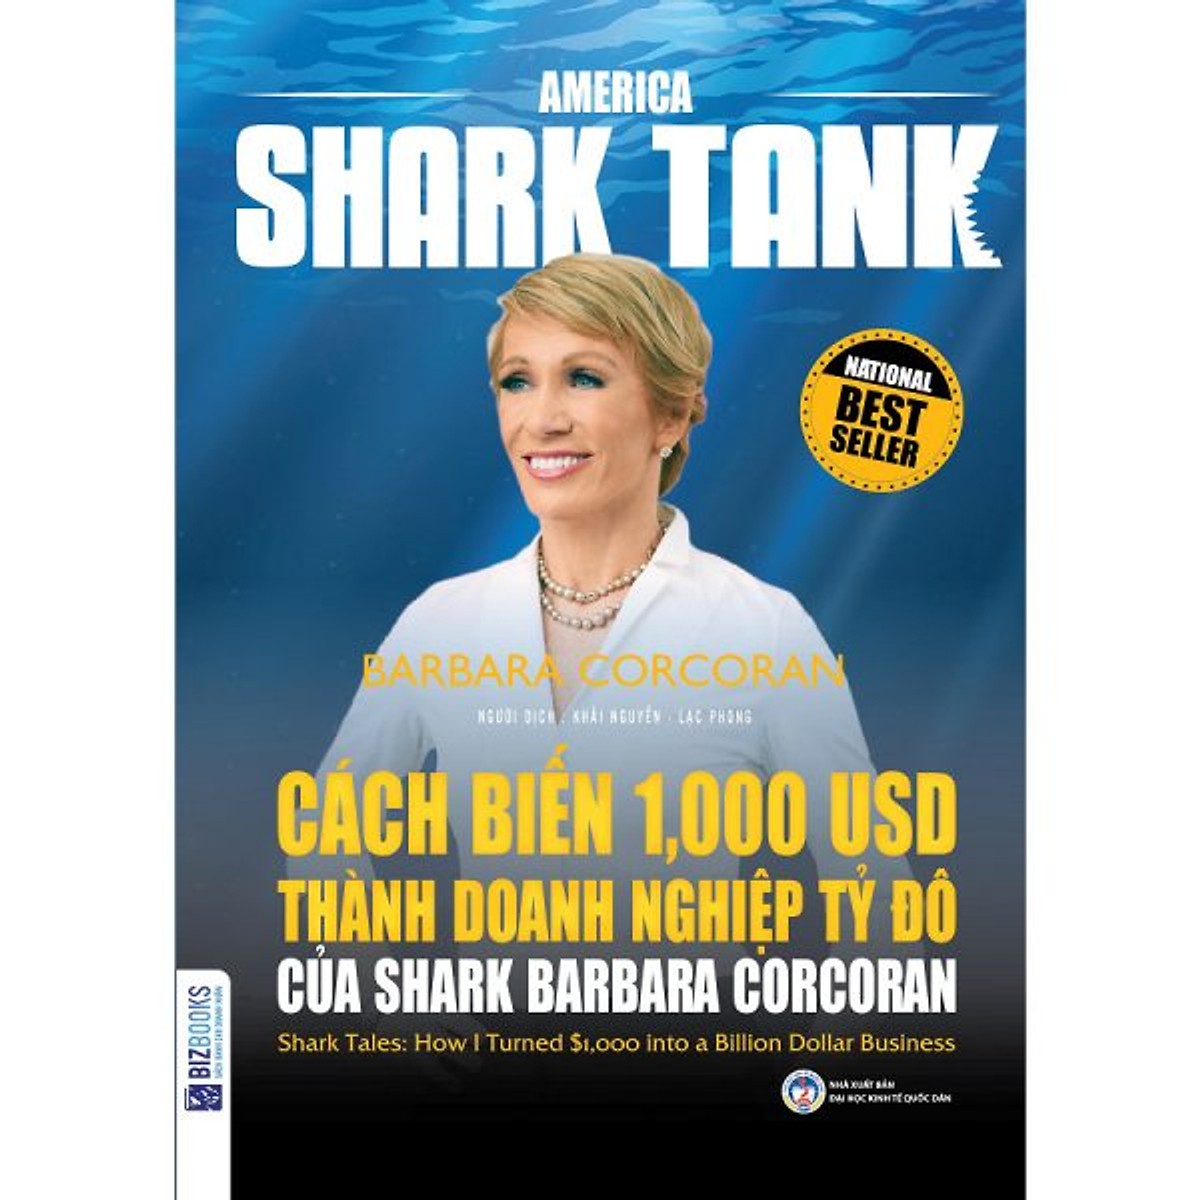 Combo Trọn Bộ 6 Cuốn America Shark Tank Và Báo Cáo Tài Chính (Tặng kèm bút chì Kingbooks)